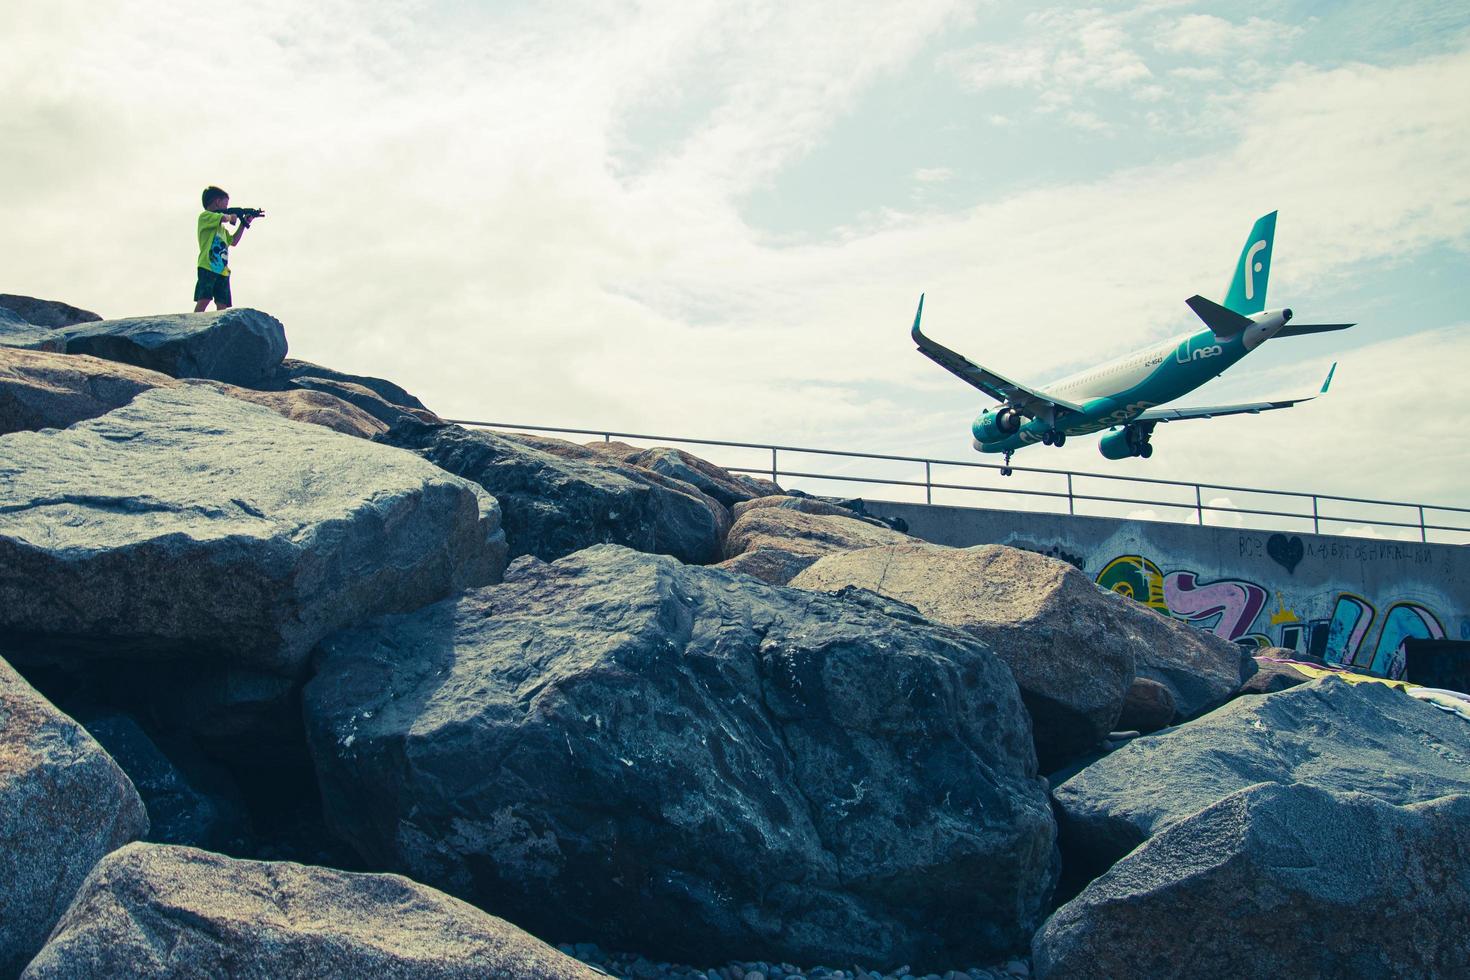 batumi, georgia, 2022 - turista de vista trasera en un niño de la playa con un disparo de pistola de juguete a un avión comercial aterrizando en la pista del aeropuerto de batumi por mar foto